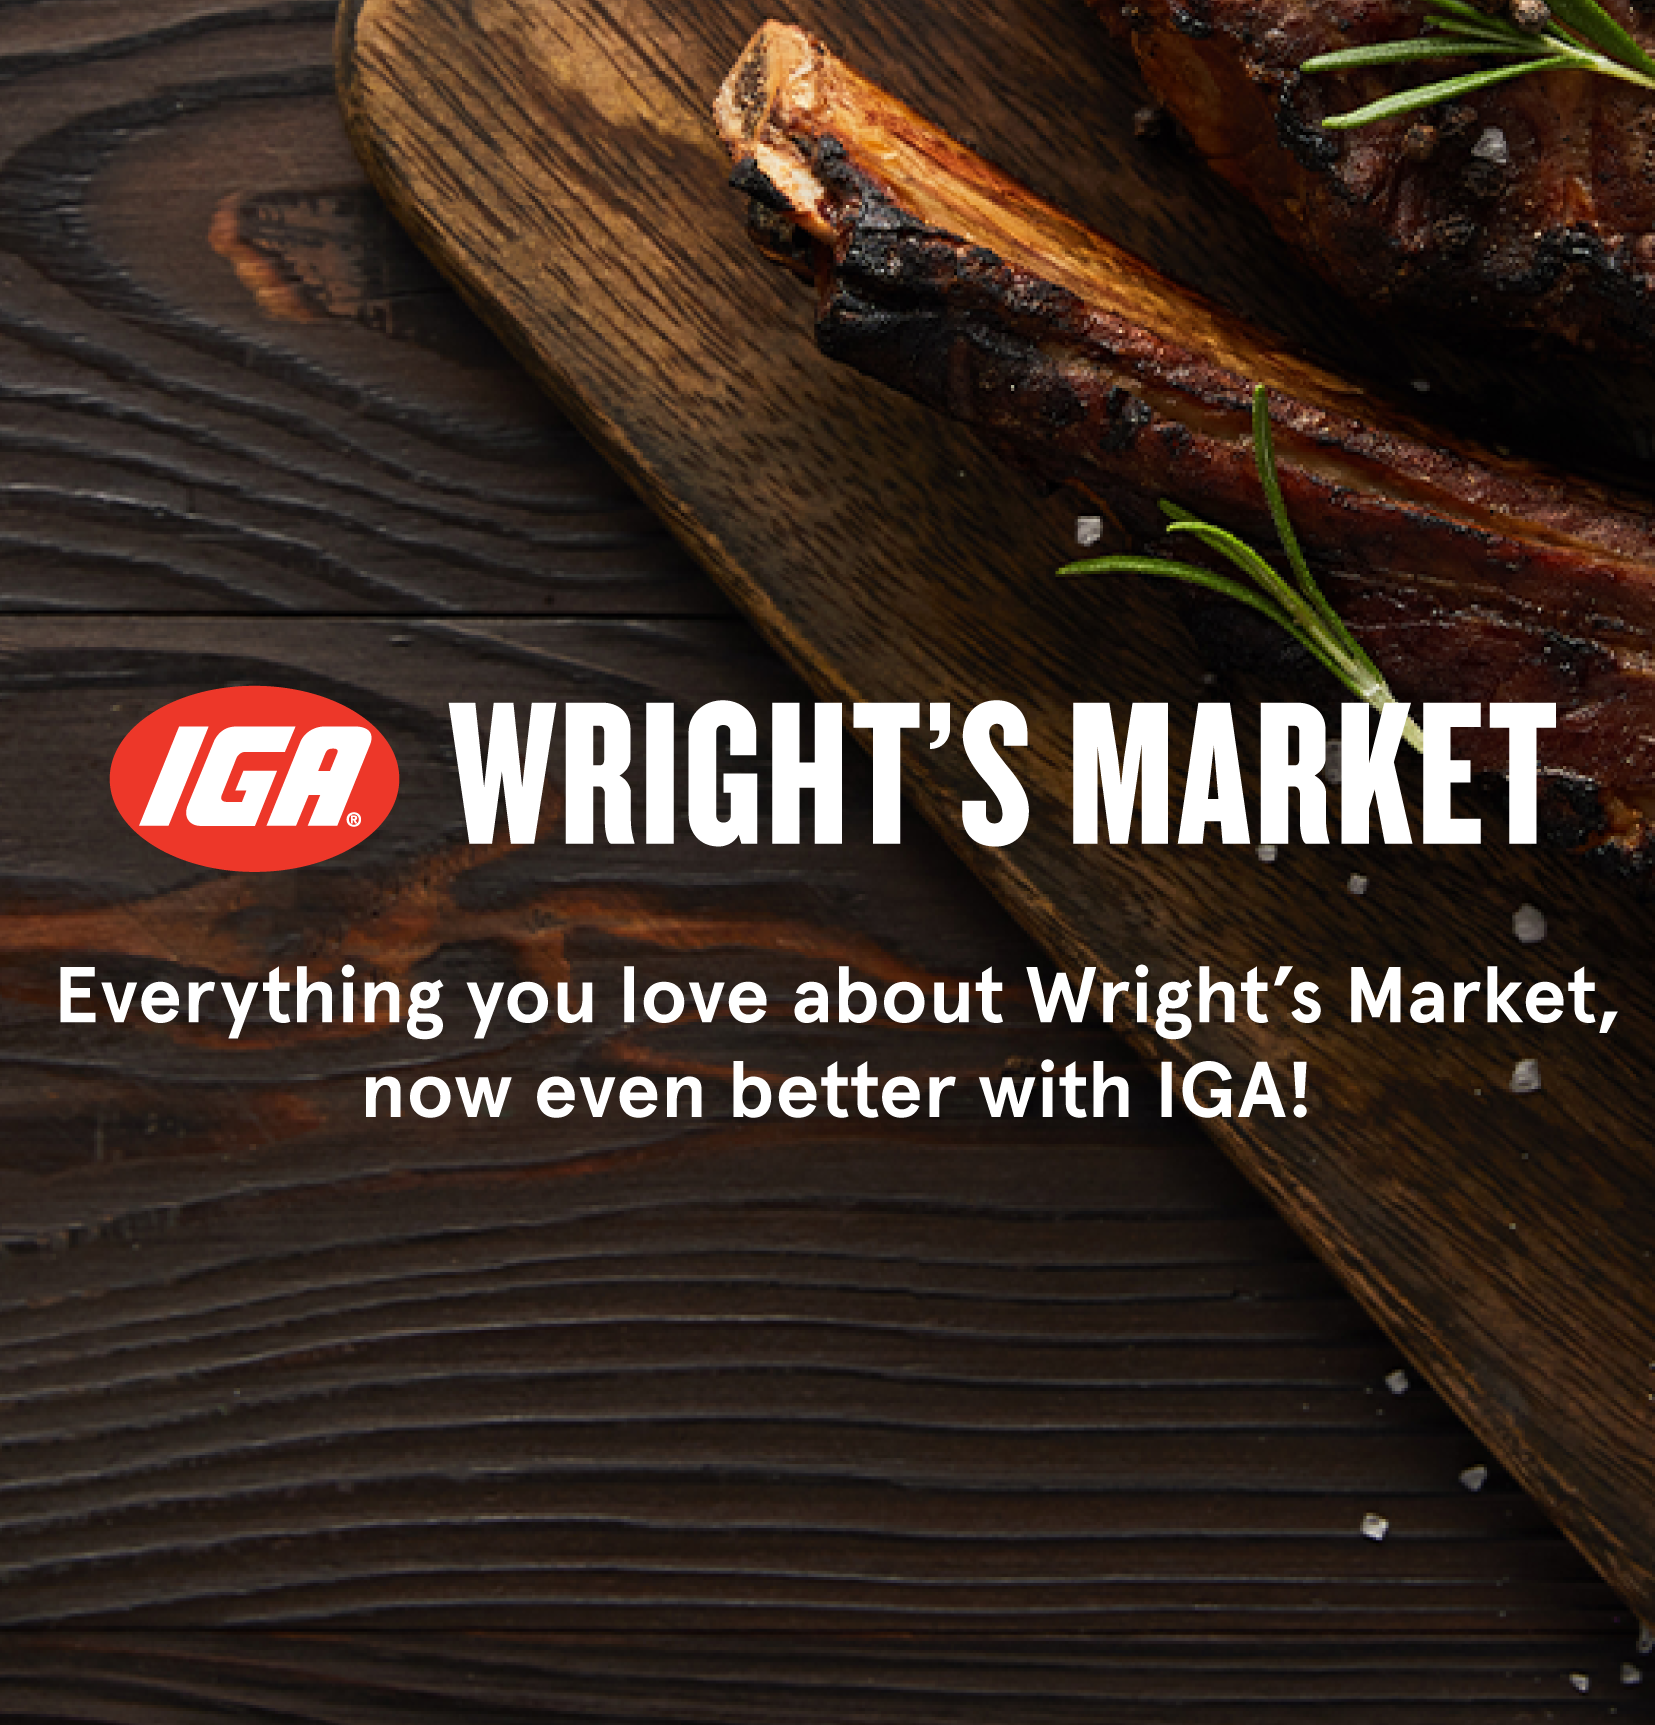 Image of Wright's Market logo on wood grain background